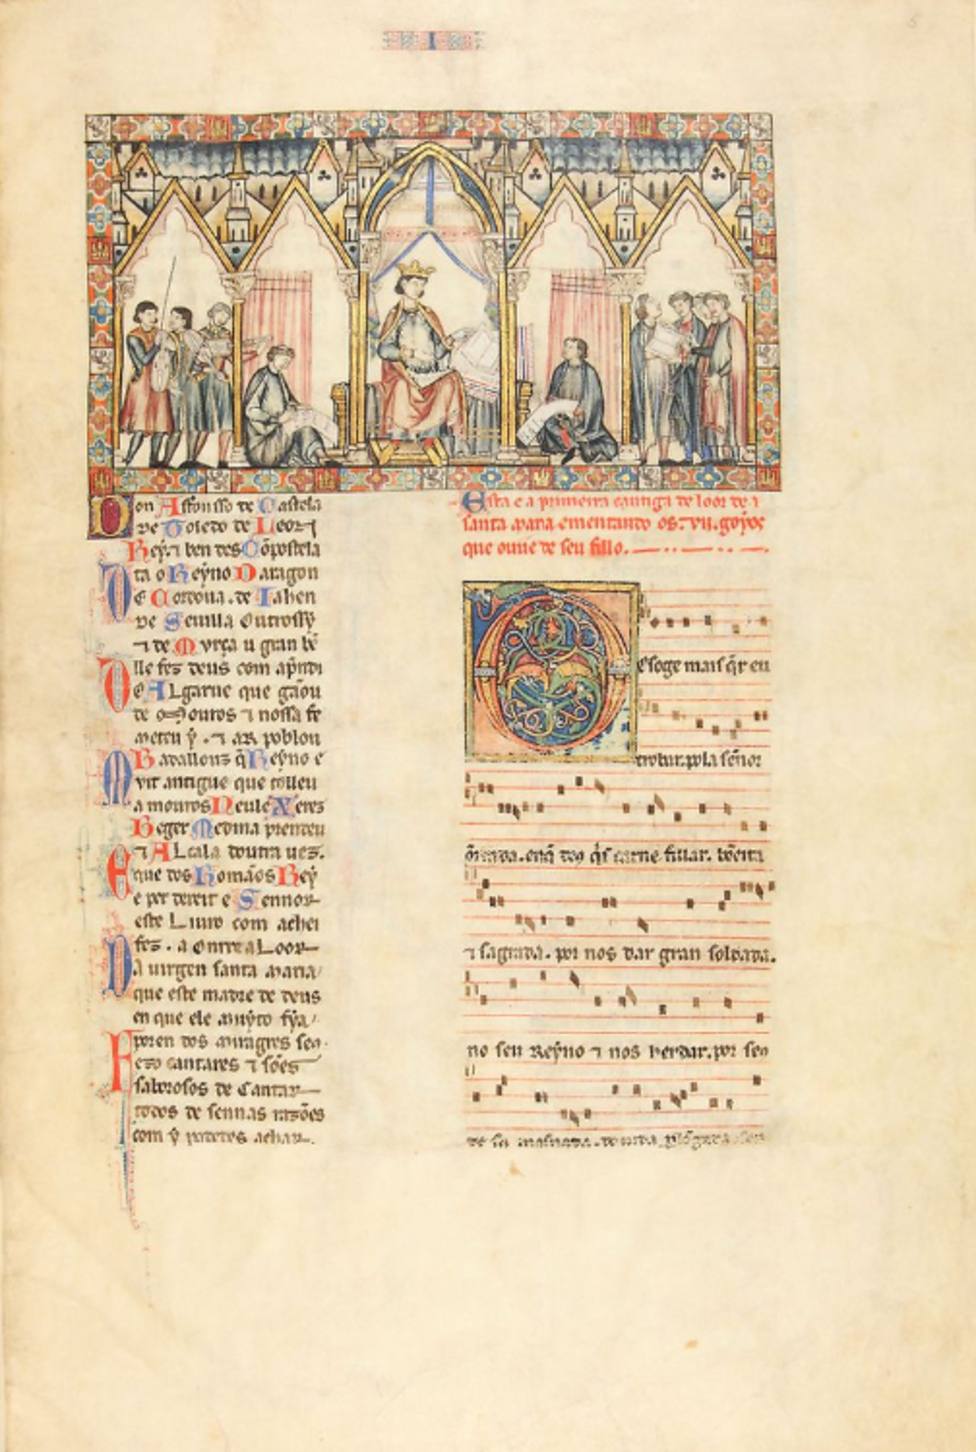 Cantigas de Santa María, Códice rico Autoría: Alfonso X, Rey de Castilla (1221-1284) Fecha: ca. 1280-1284